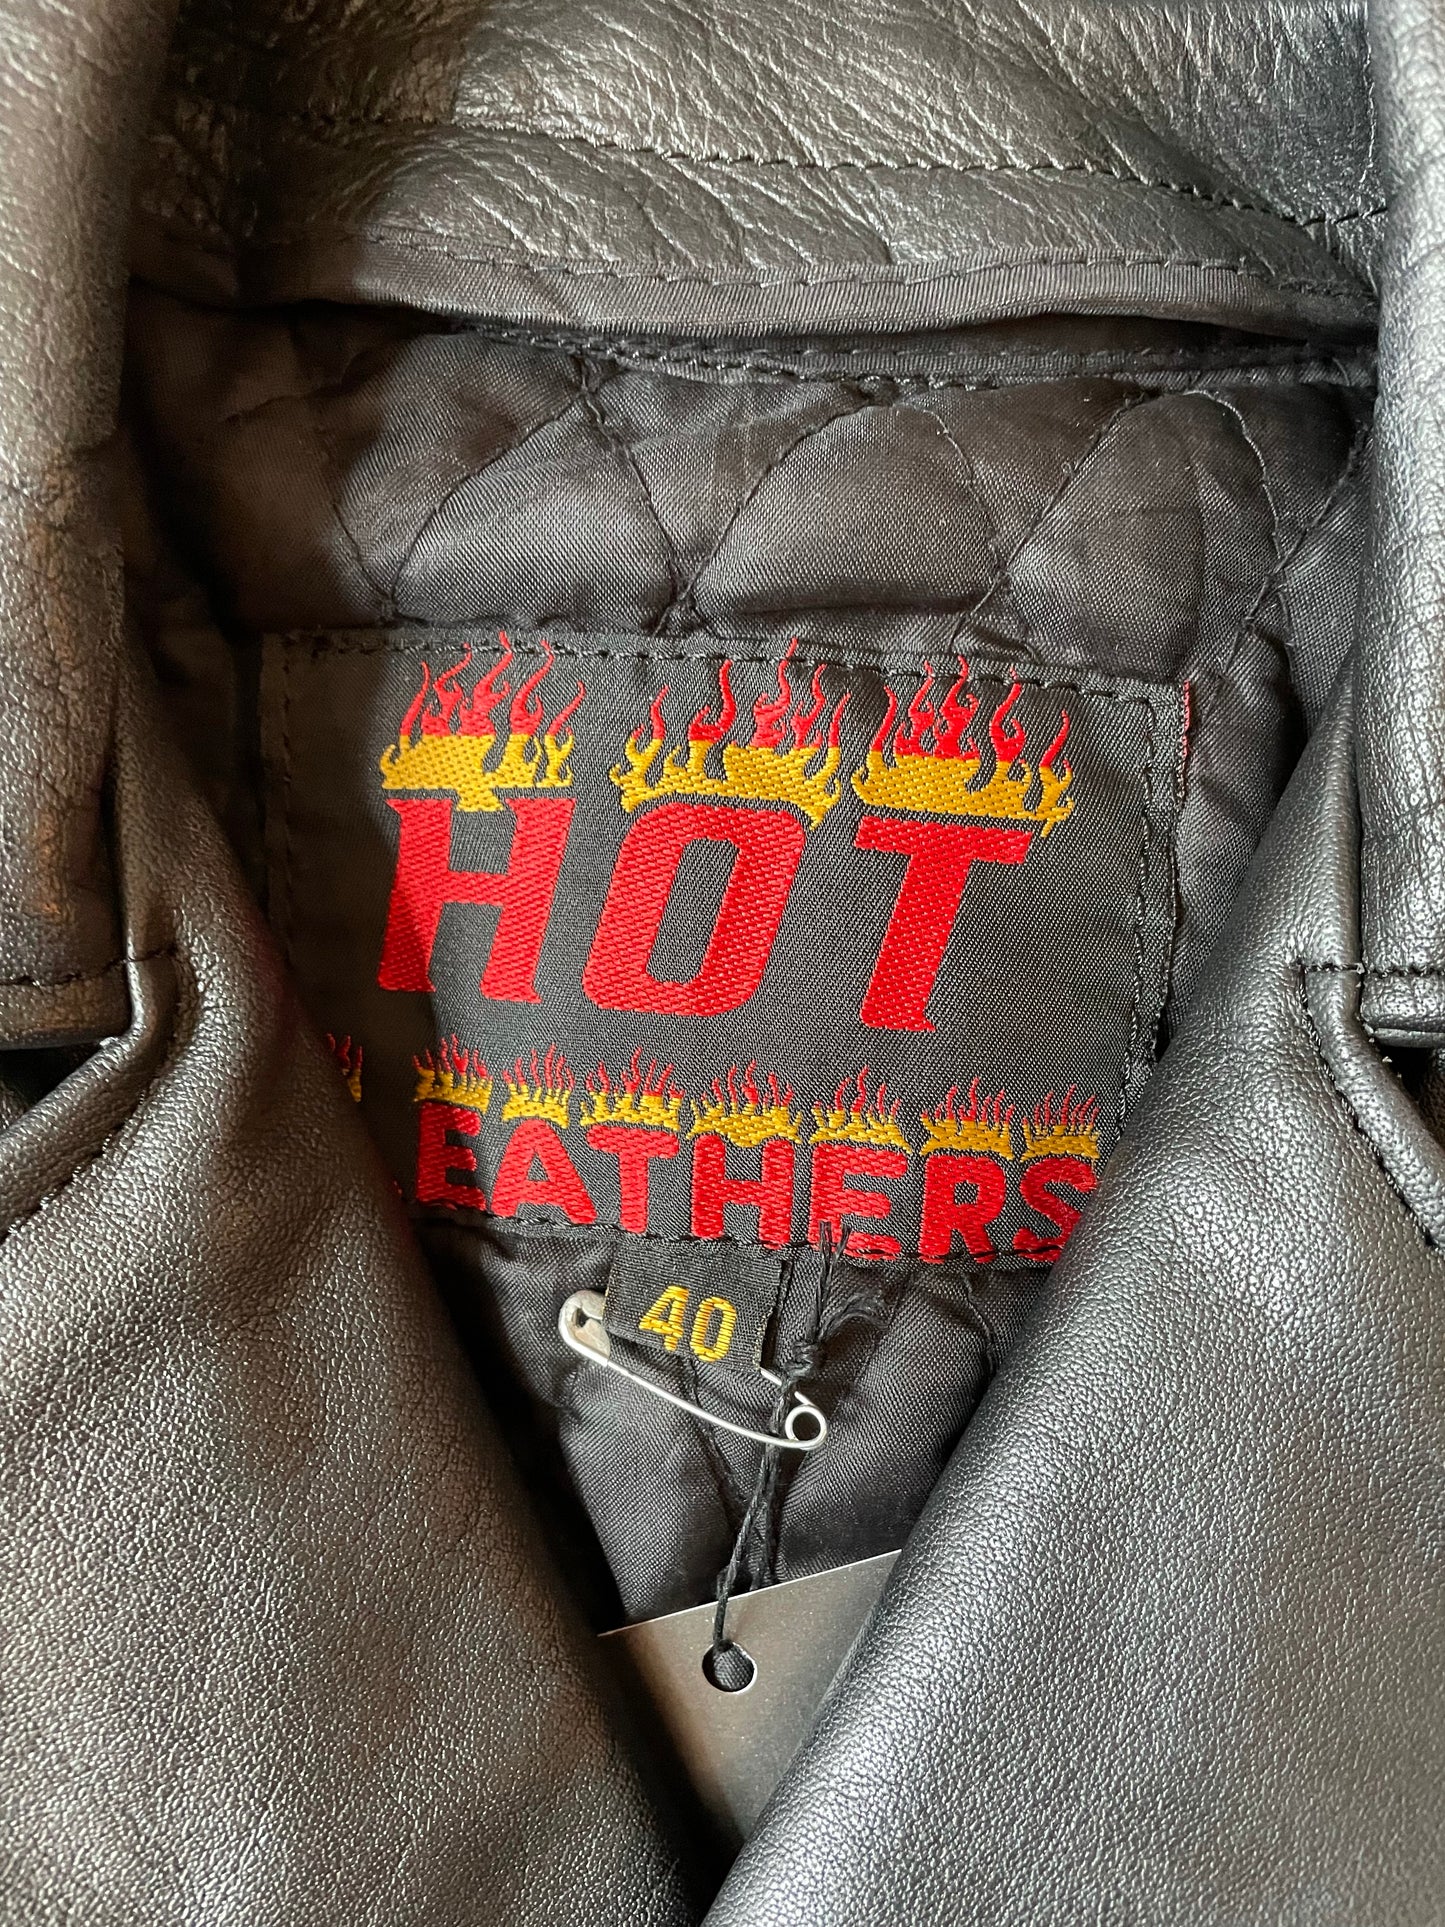 Hot Leathers Classic Black Leather Moto Jacket